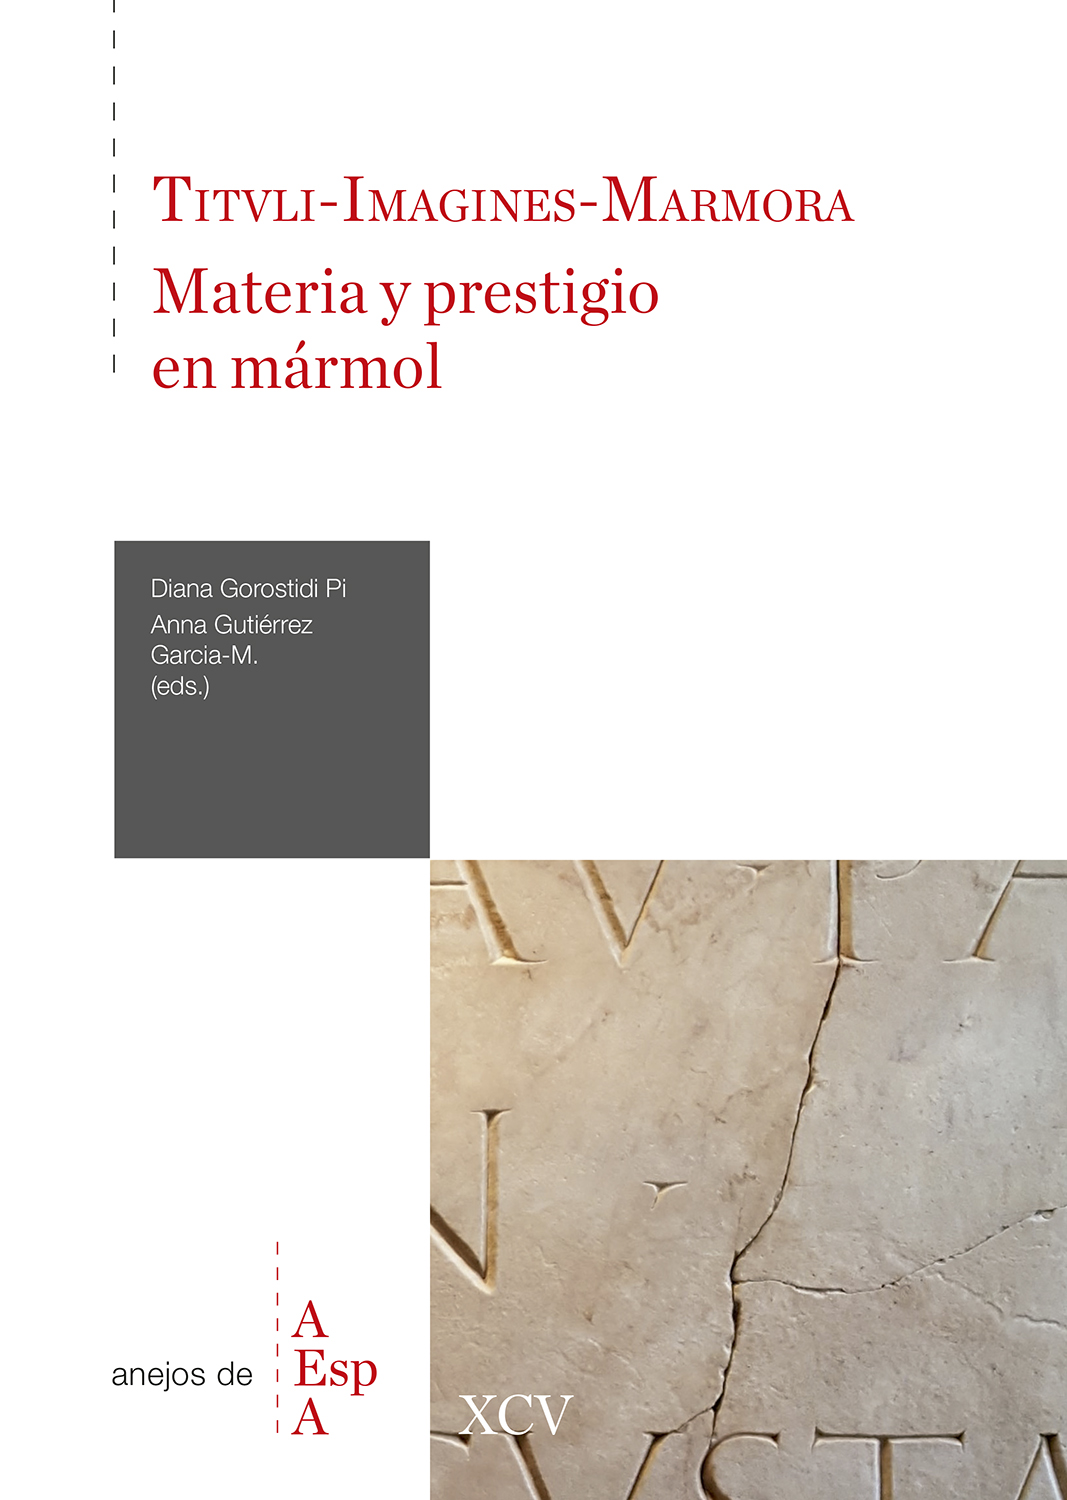 Tituli-Imagines-Marmora: materia y prestigio en mármol. 9788400111090